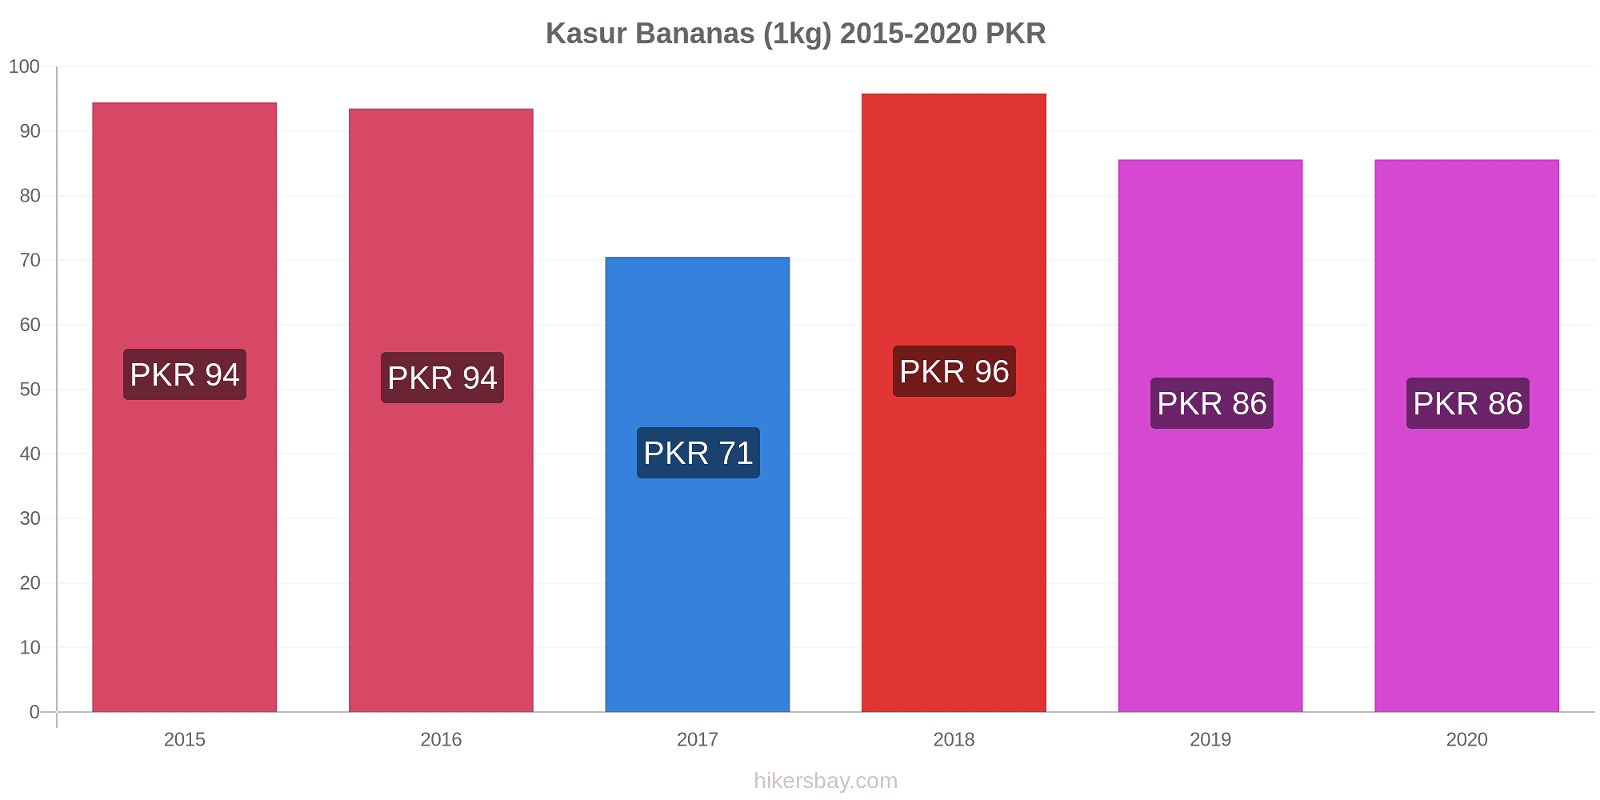 Kasur variação de preço Banana (1kg) hikersbay.com